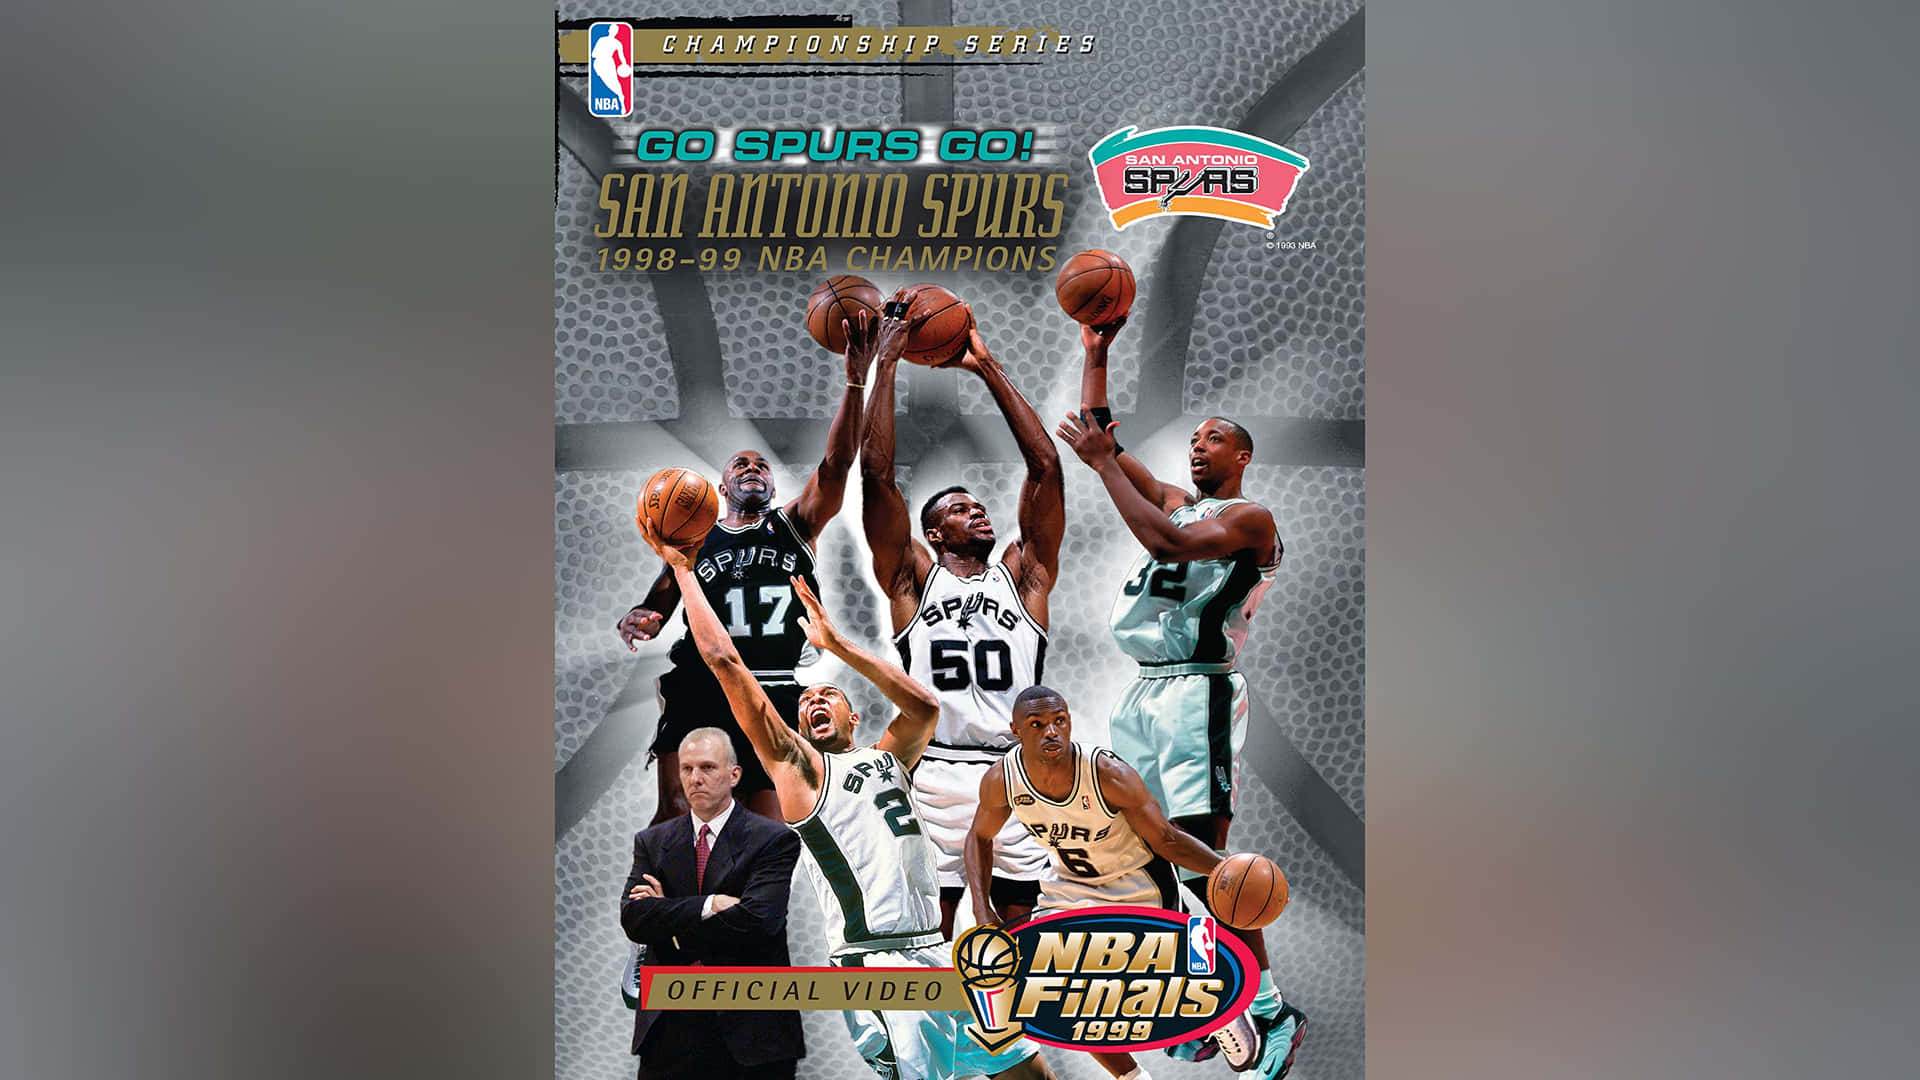 Davidrobinson Bei Den Nba Meisterschaften 1999: San Antonio Spurs Wallpaper